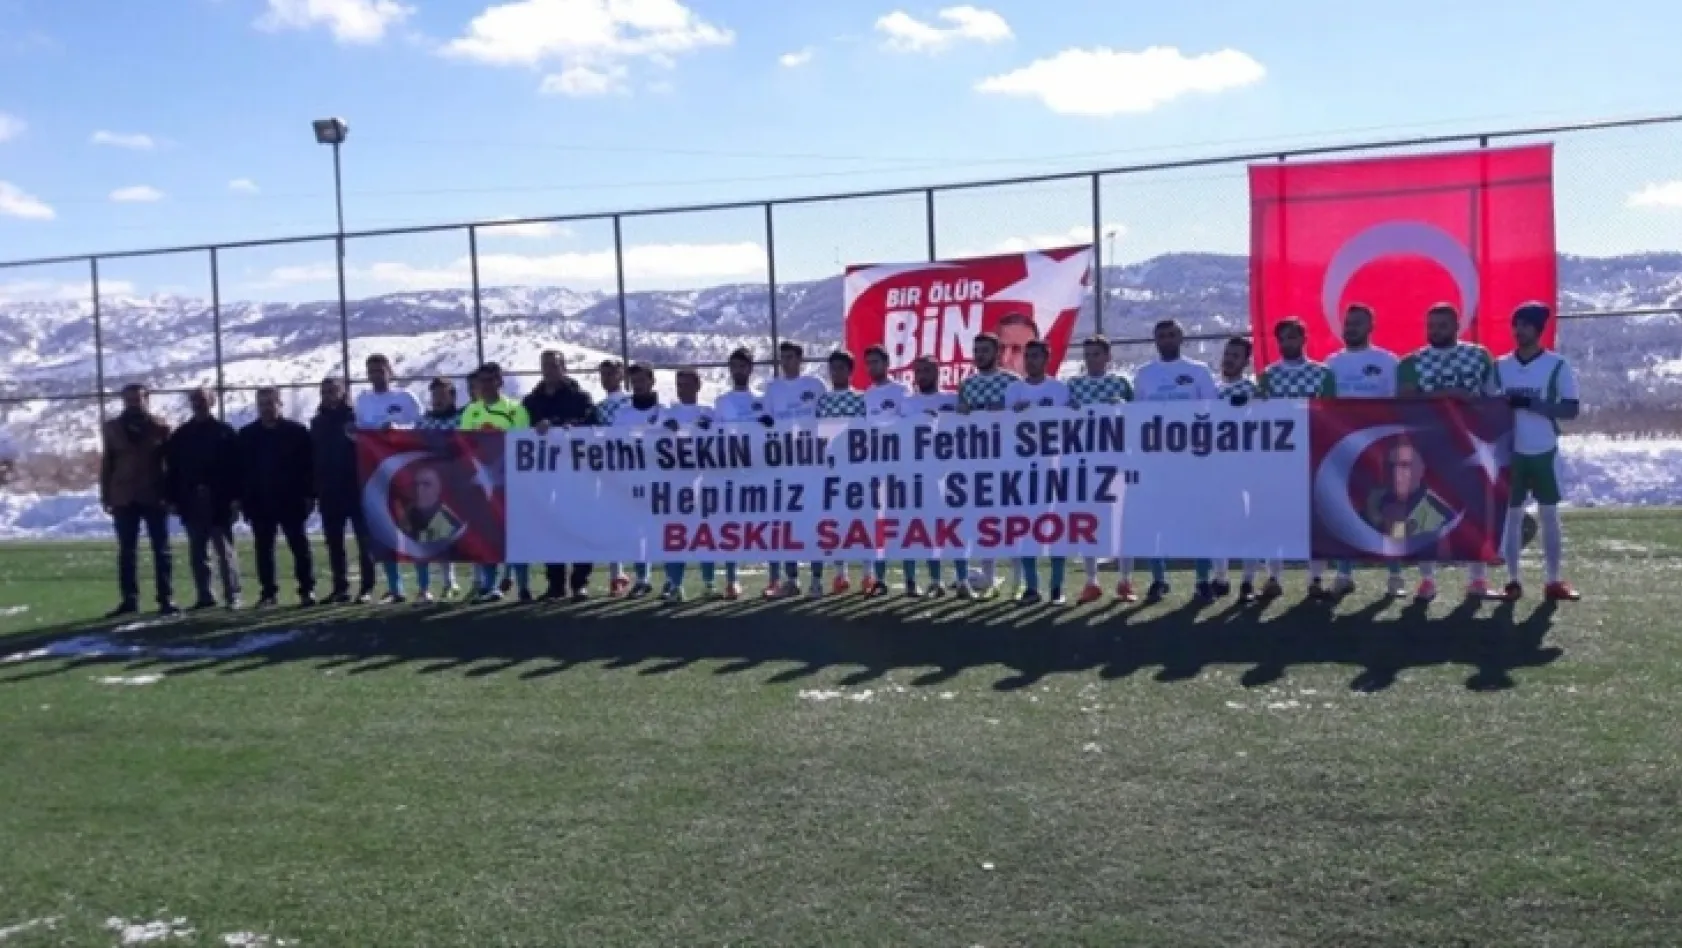 'Hepimiz Fethi Sekiniz' pankartıyla sahaya çıktılar